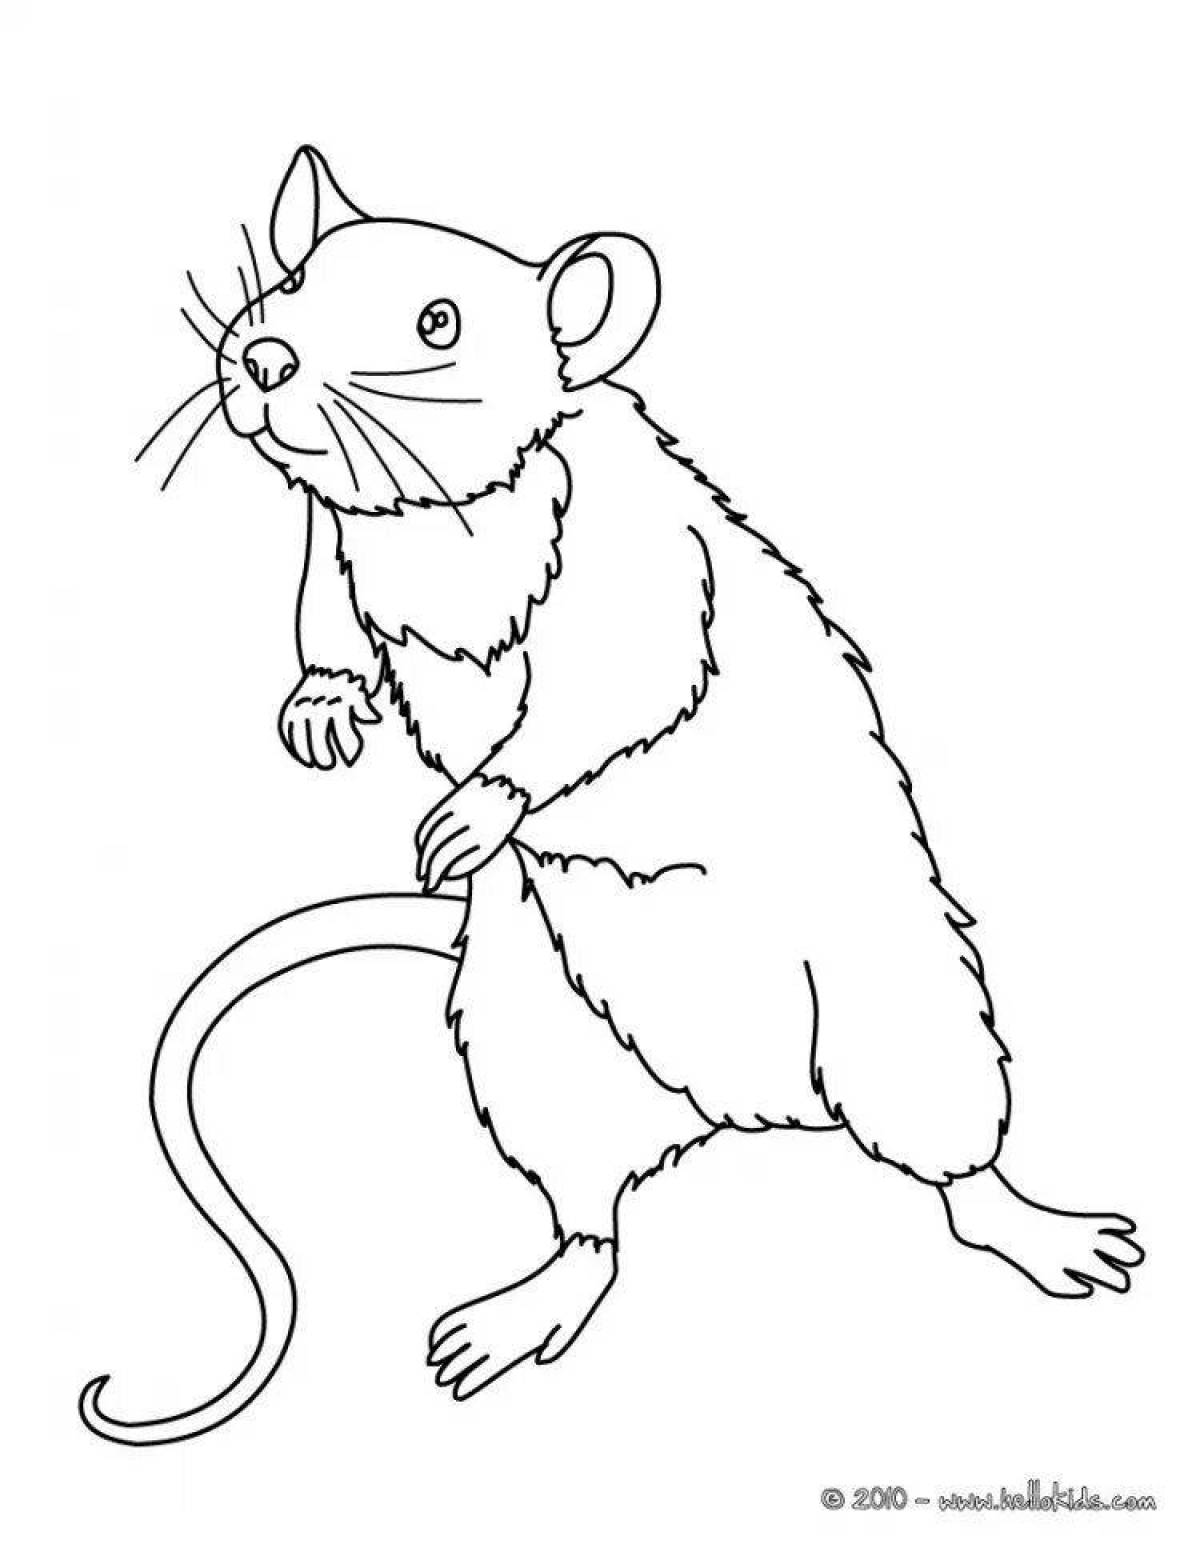 Увлекательная раскраска крысы для детей